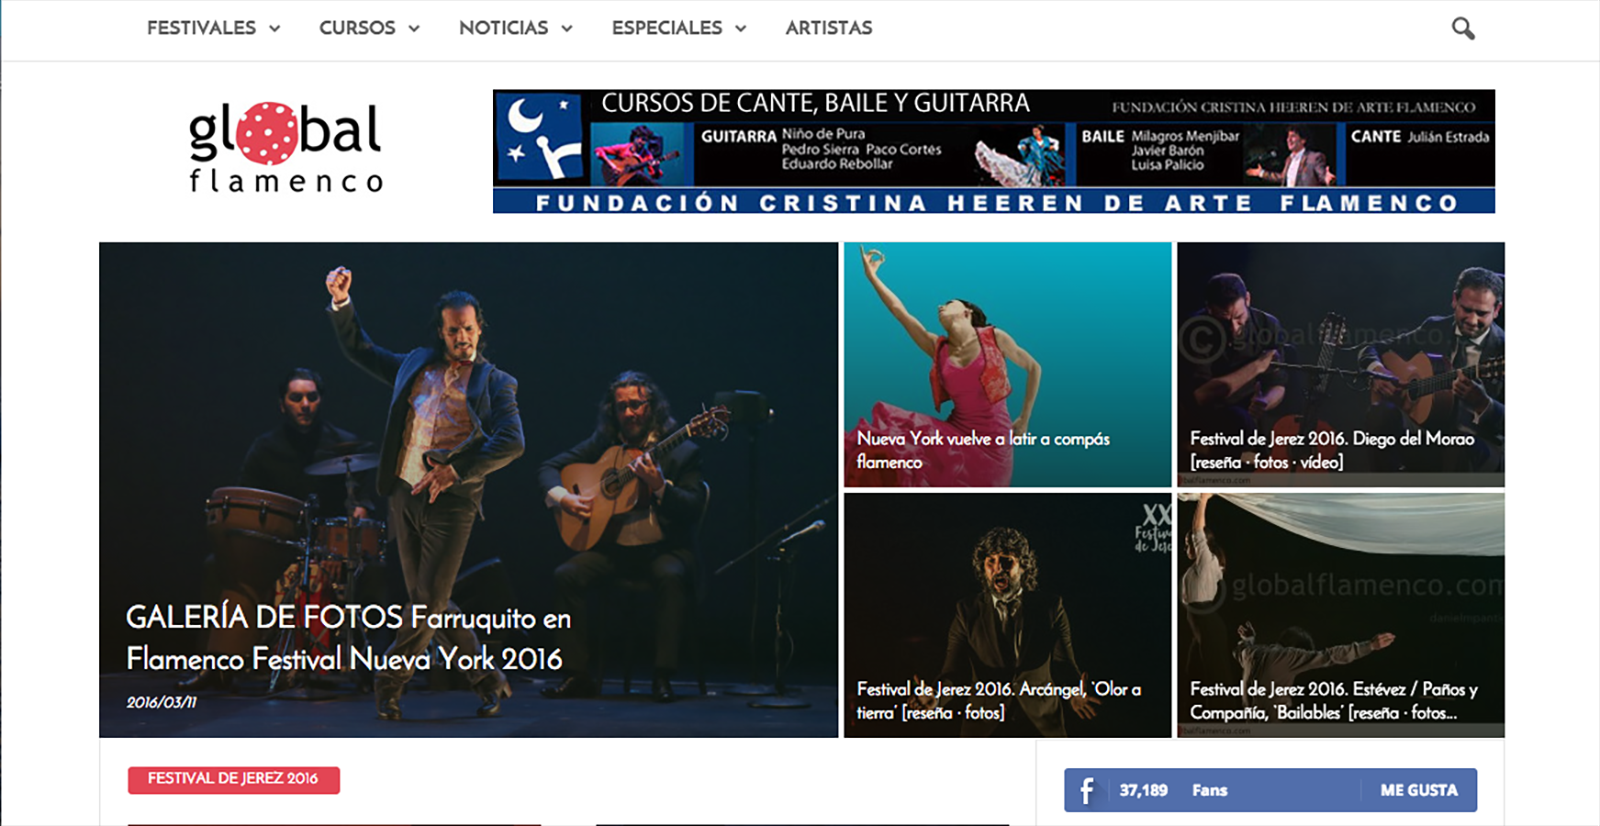 Global Flamenco